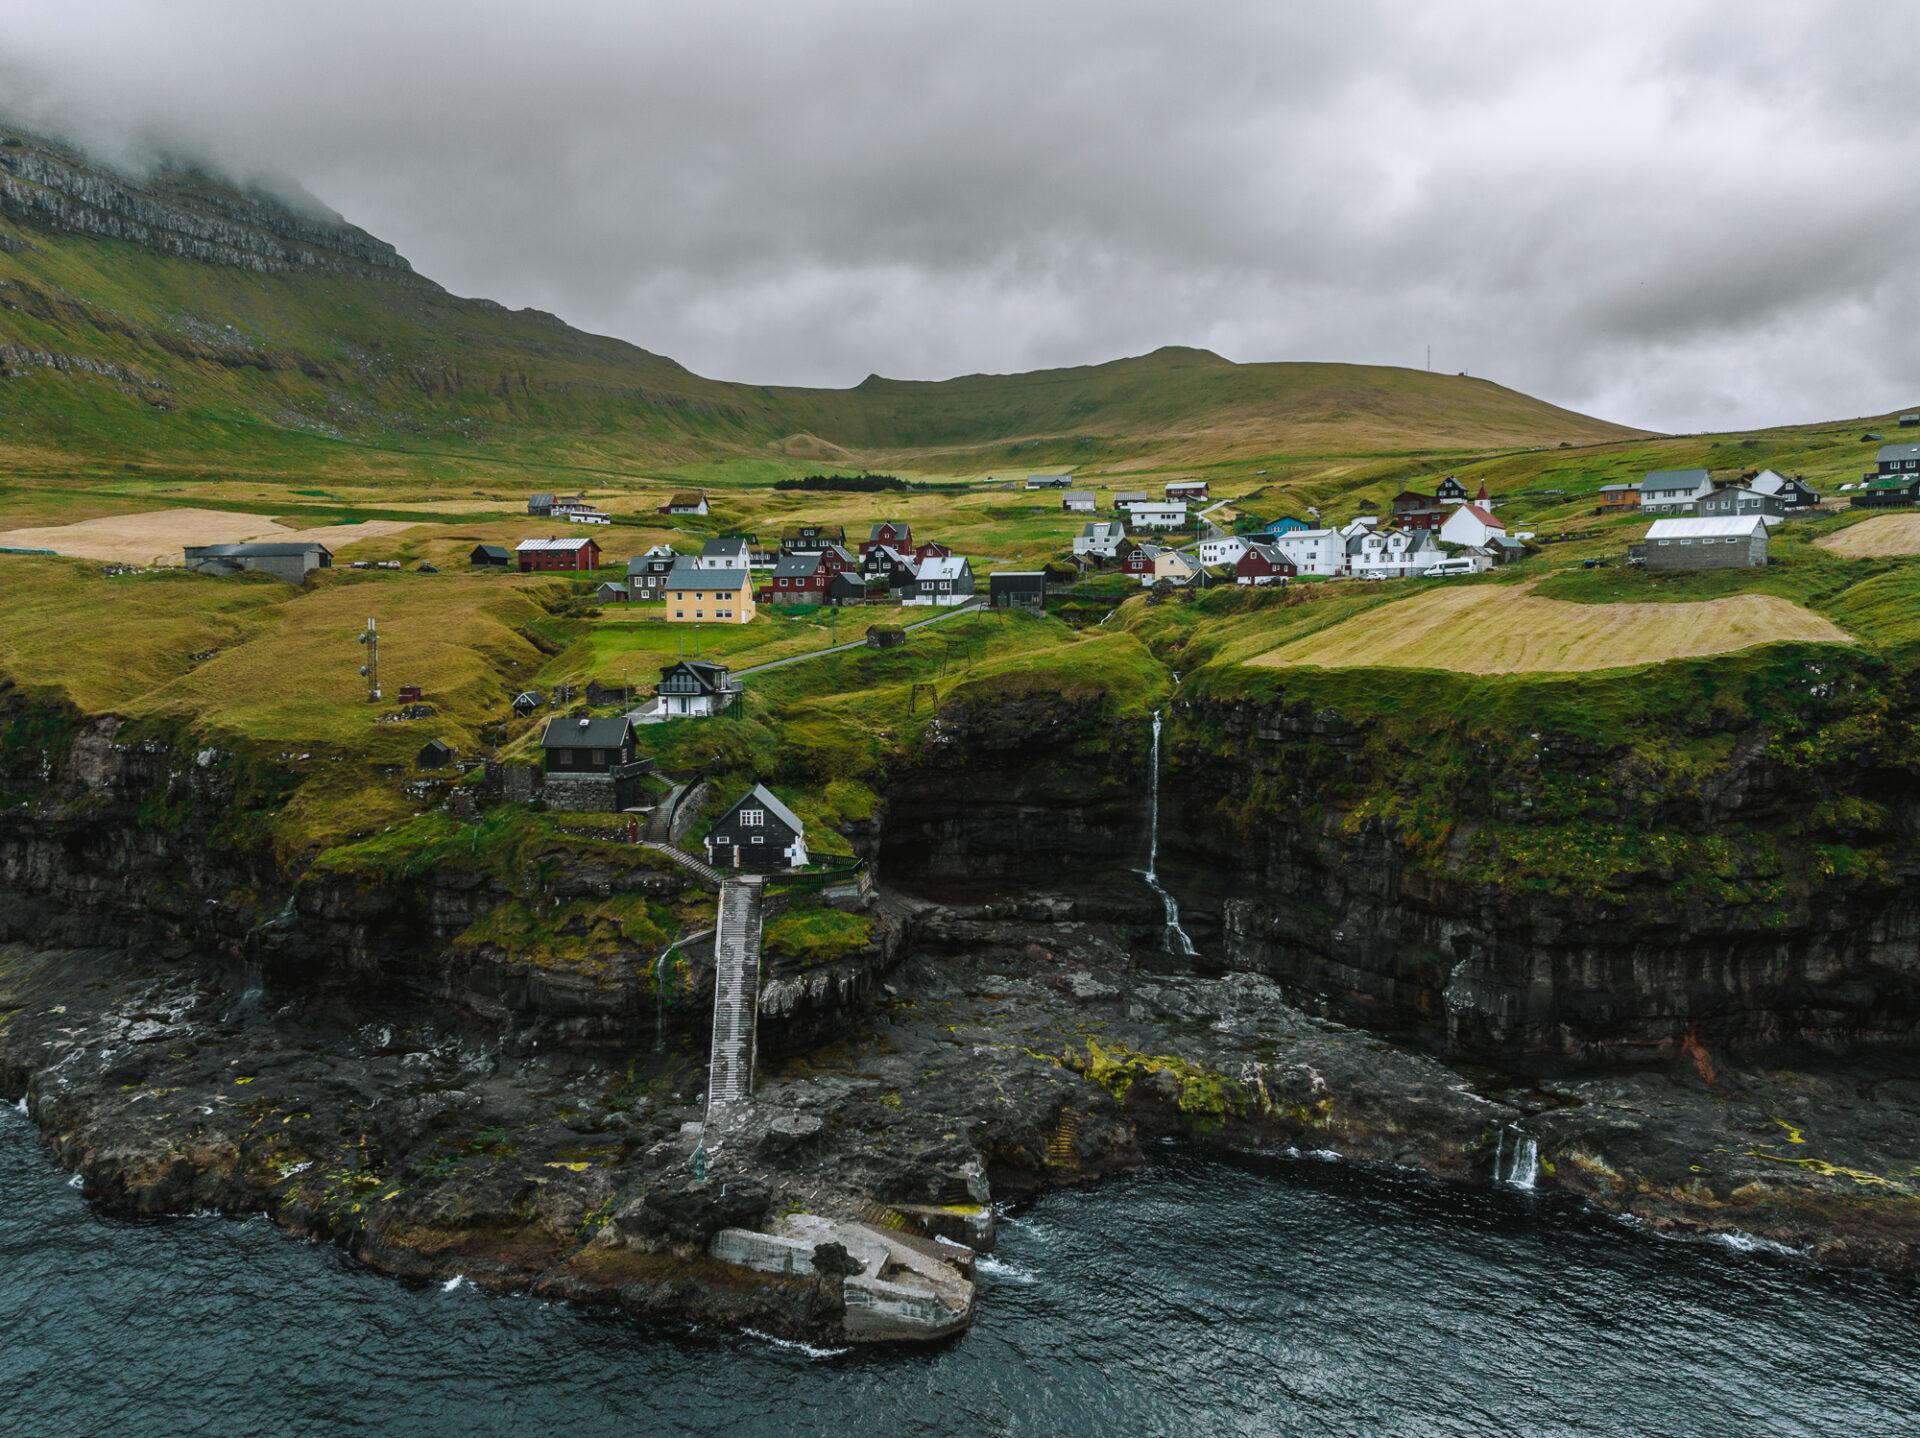 Thumbnail of - Faroe Islands scenic view by Oksana & Max